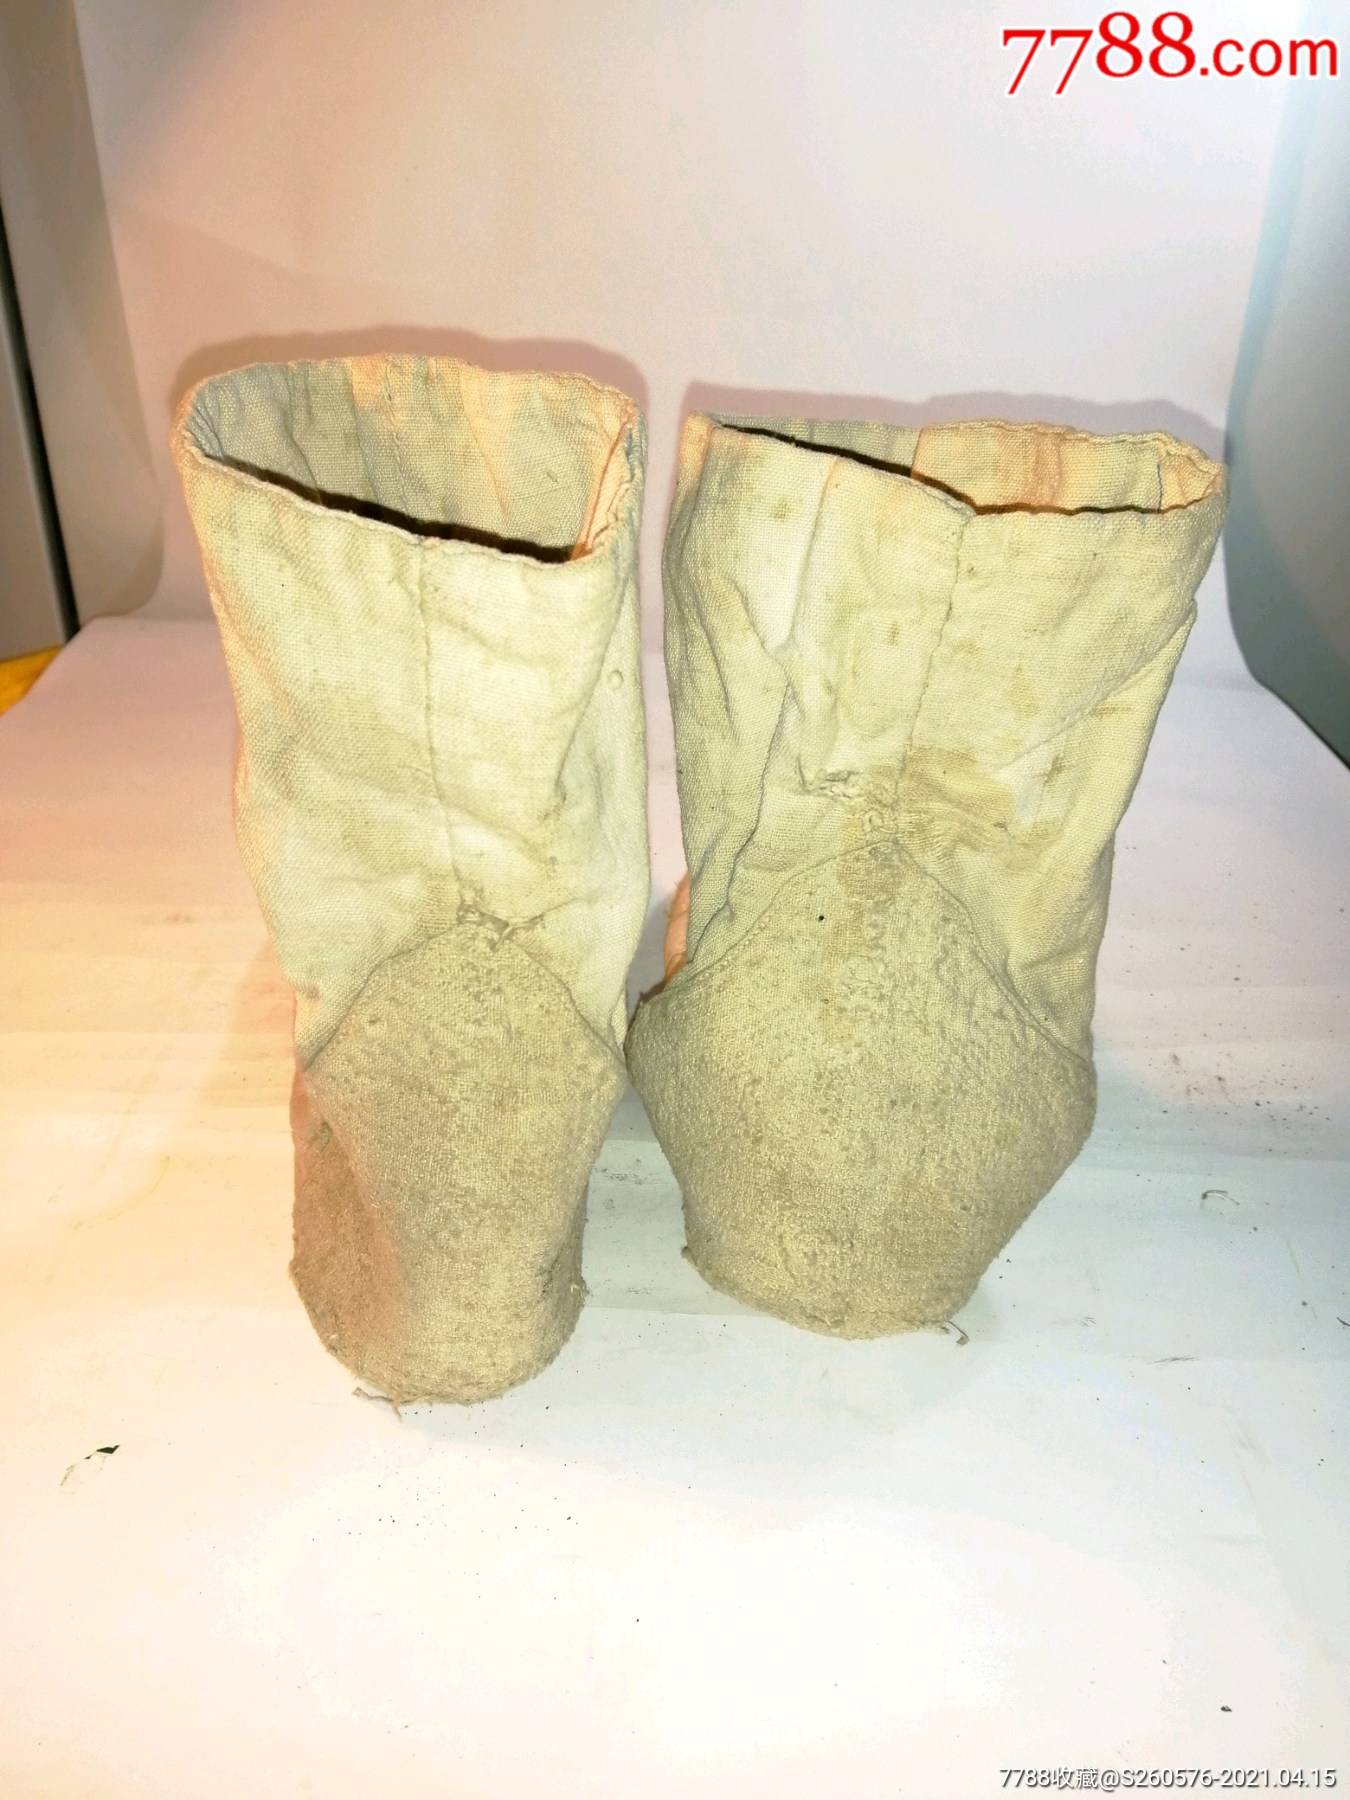 抗日战争时期八路军指战员穿过的甲袜子